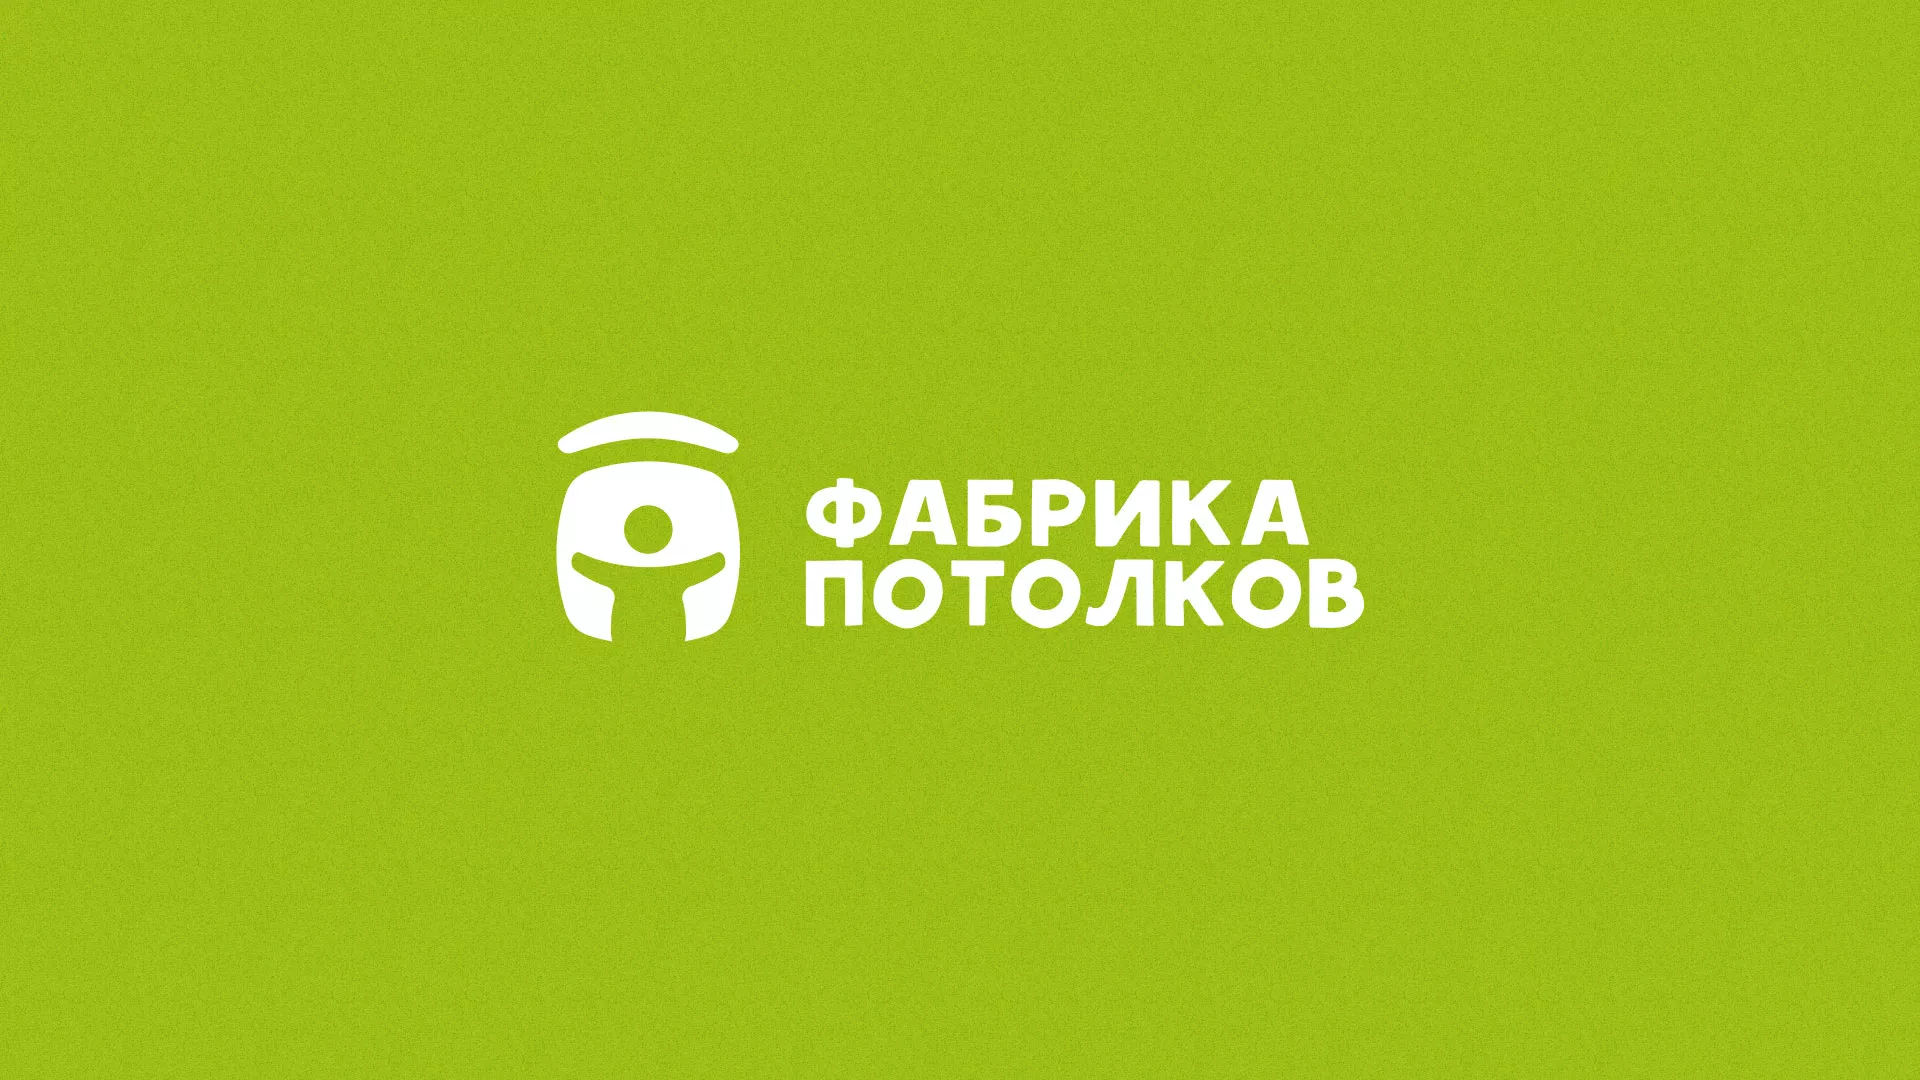 Разработка логотипа для производства натяжных потолков в Болхове